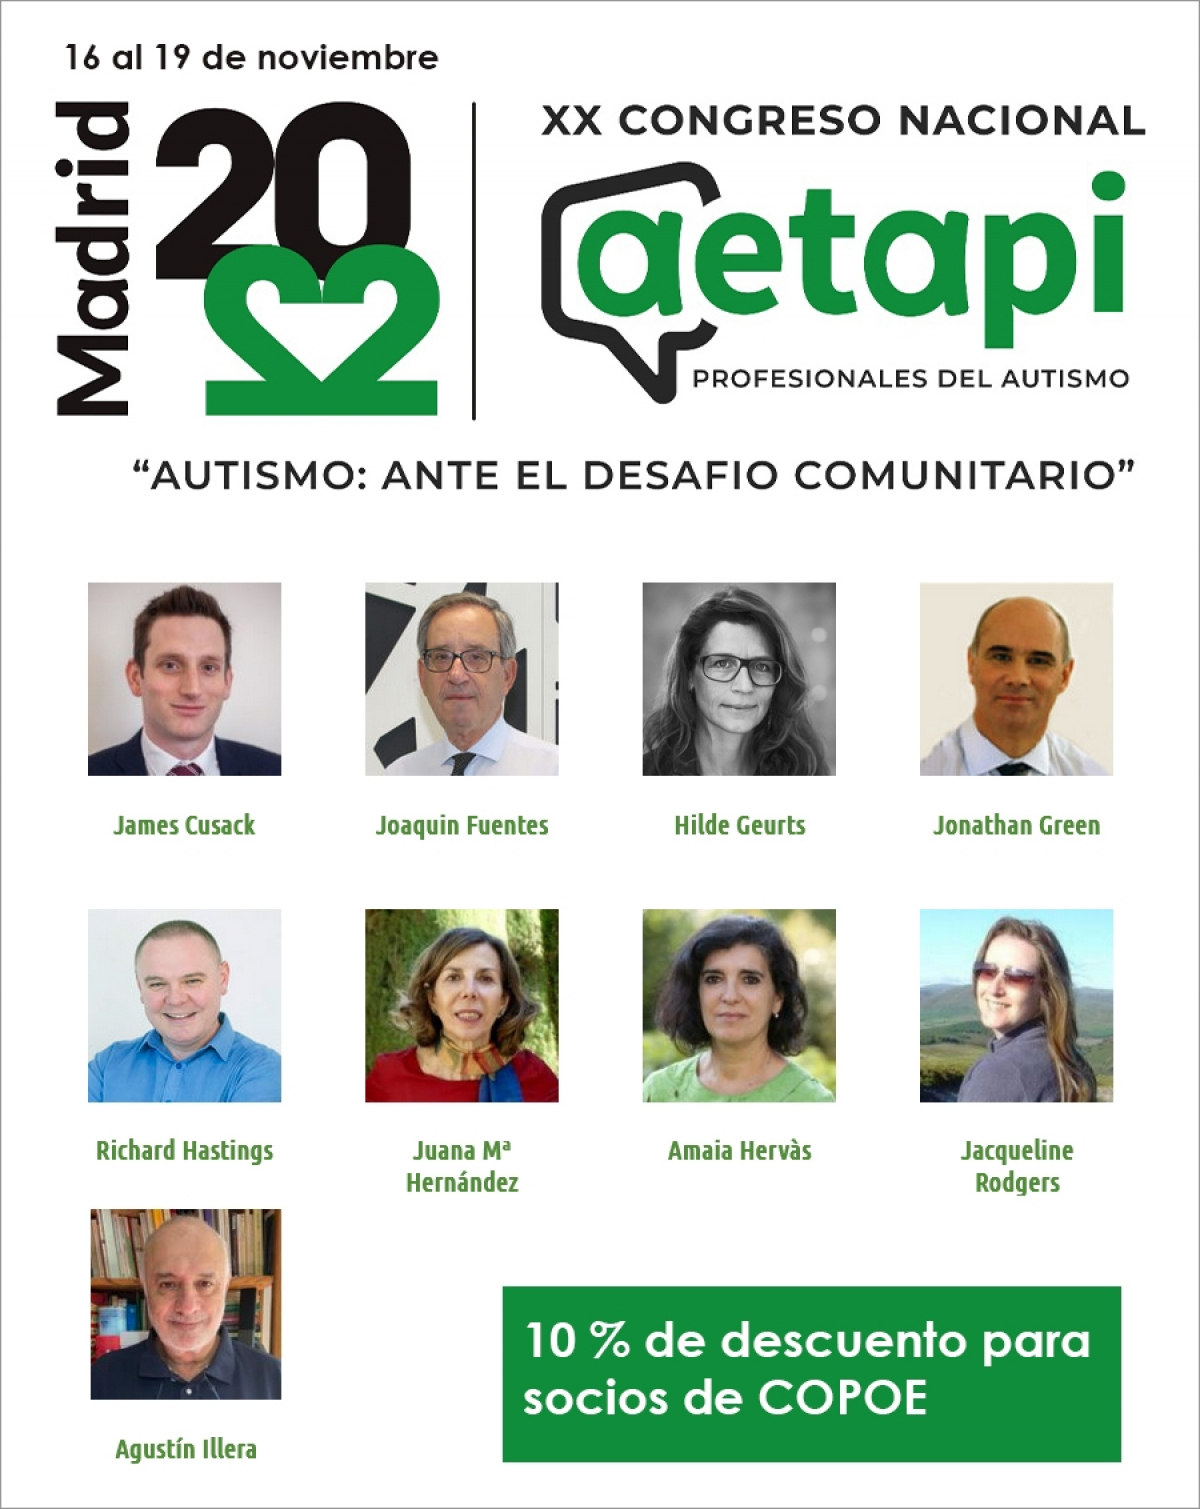 XX Congreso Nacional AETAPI, 16 al 19 de noviembre en Madrid